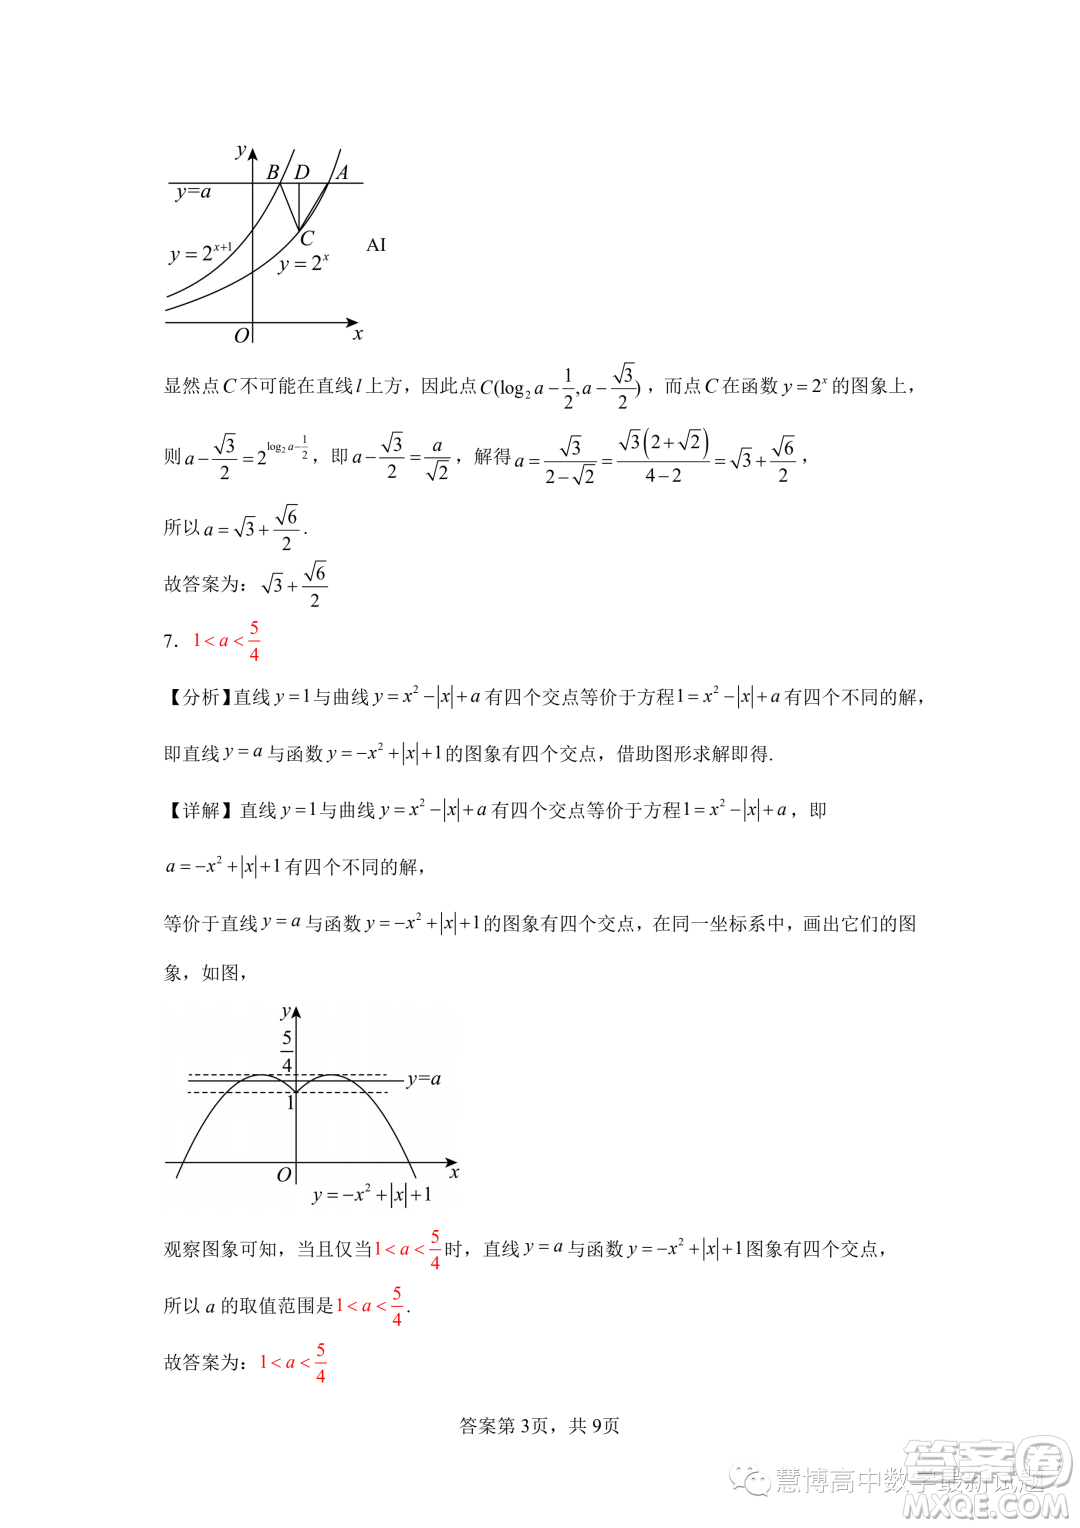 广州大学附属中学2024届高三强基计划班上学期9月入学考试数学试题答案